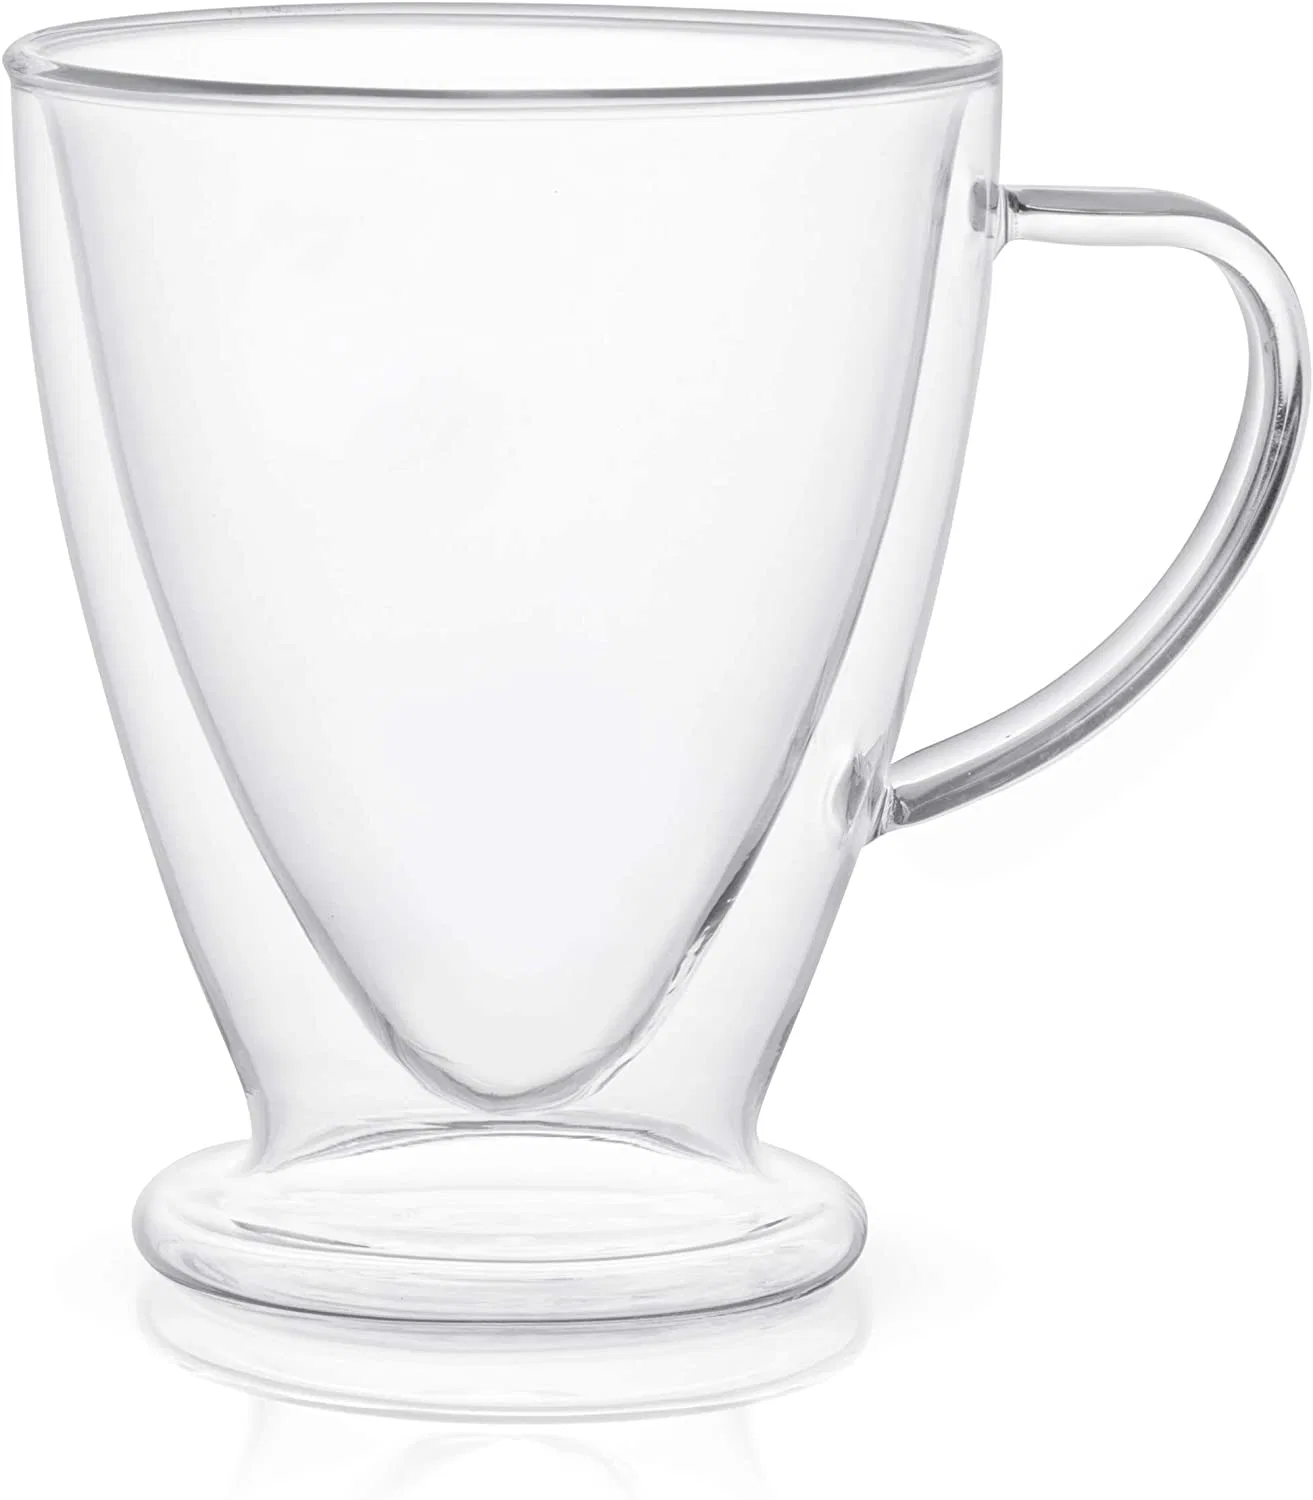 كوب قهوة بشاي زجاجي البورسيليكات مع مقبض مياه شاي Ceoffee كوب الحليب